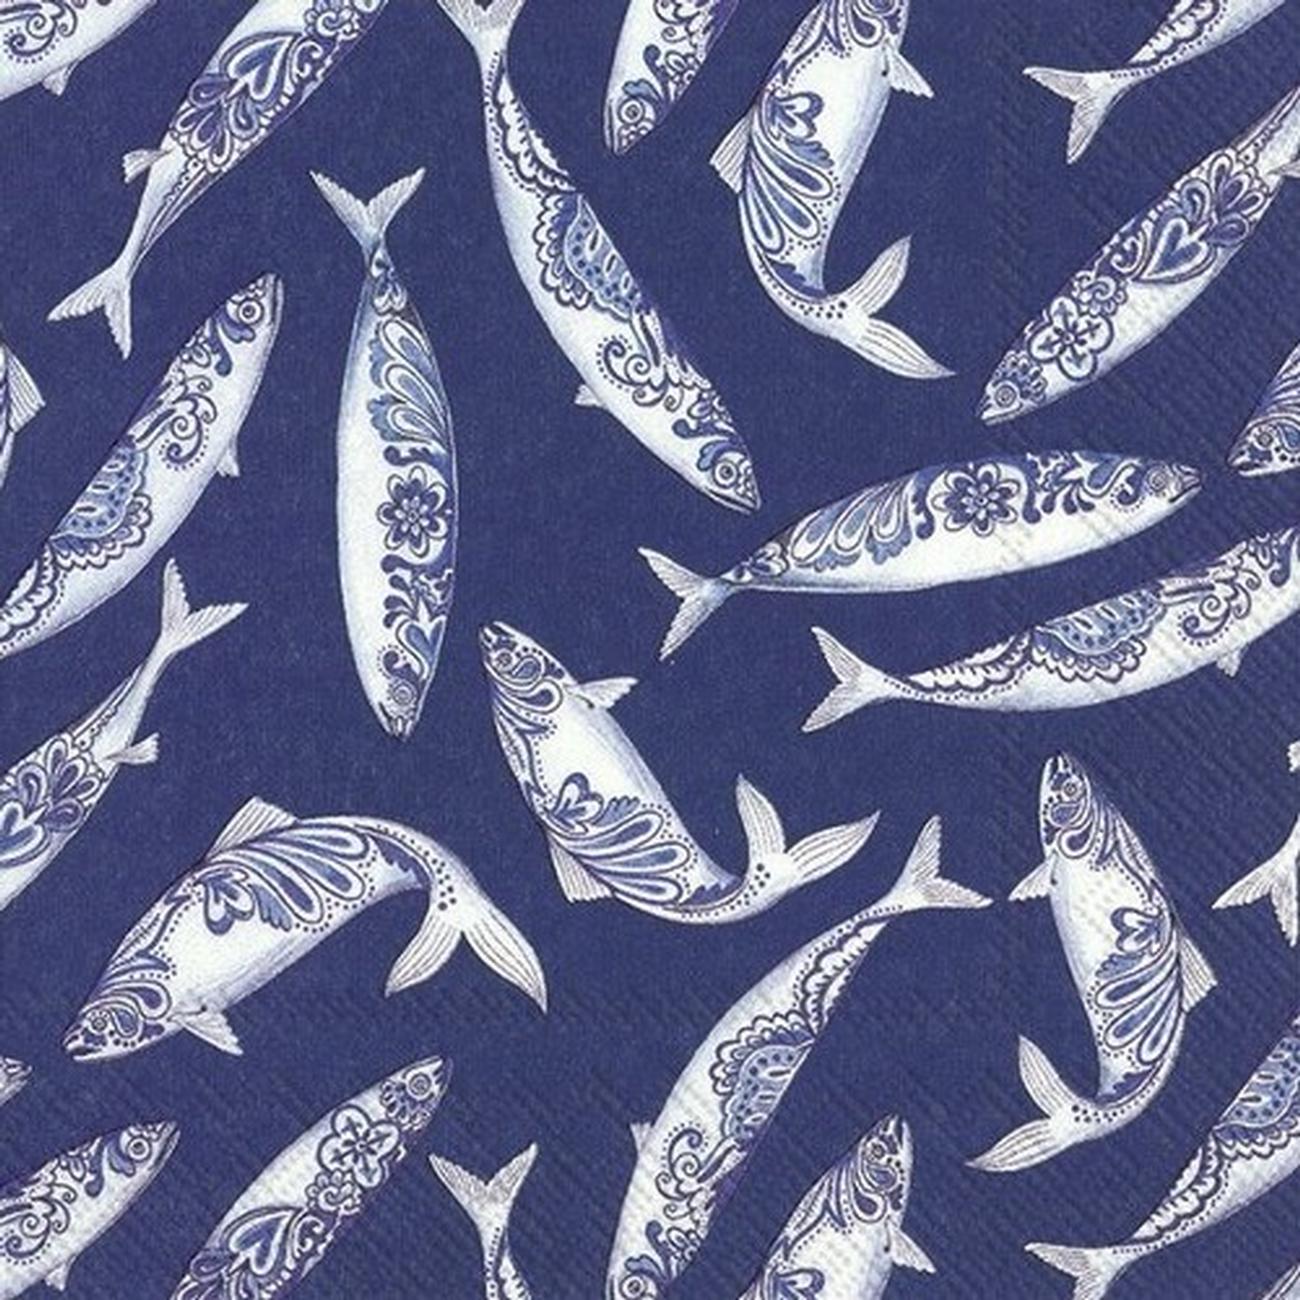 ihr-decorative-fish-blue-lunch-napkins - IHR Lunch Napkins Decorative Fish Blue